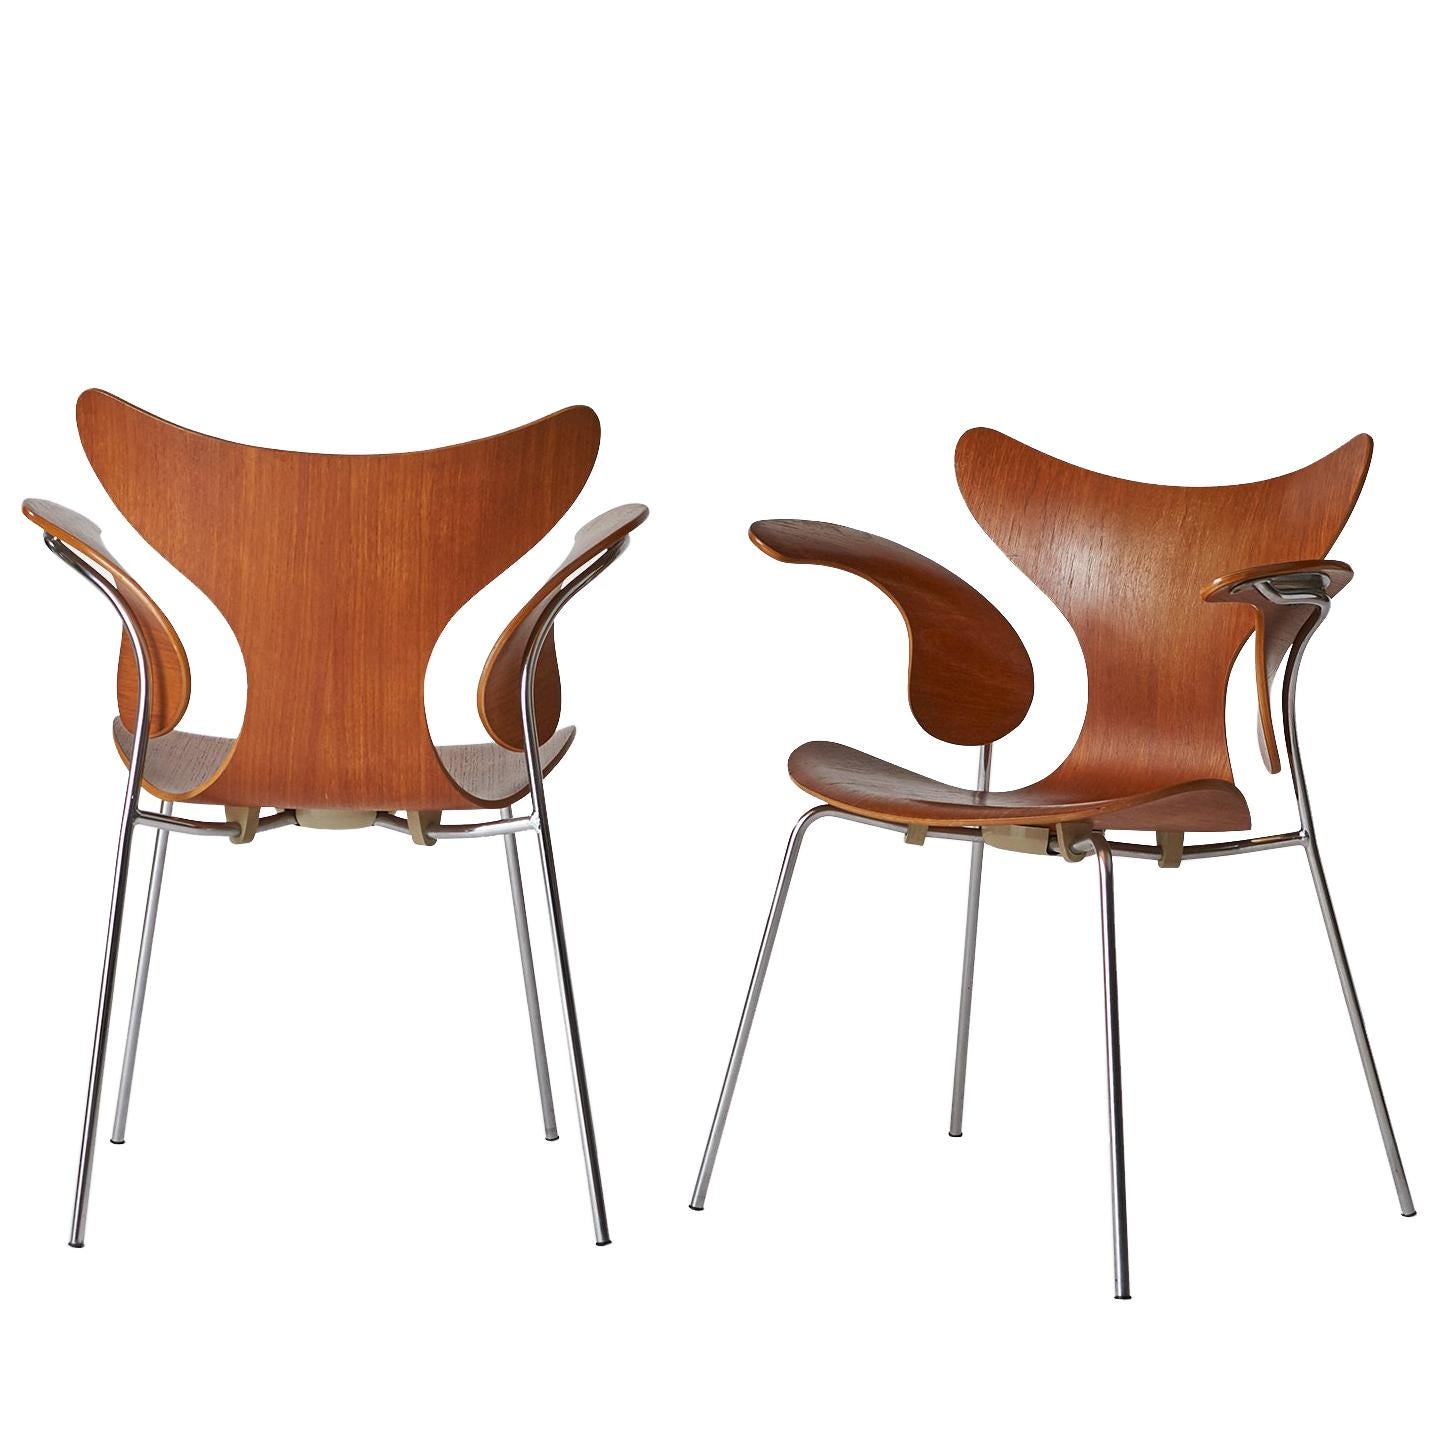 Arne Jacobsen, Sessel, die Lilie, Modell 3208